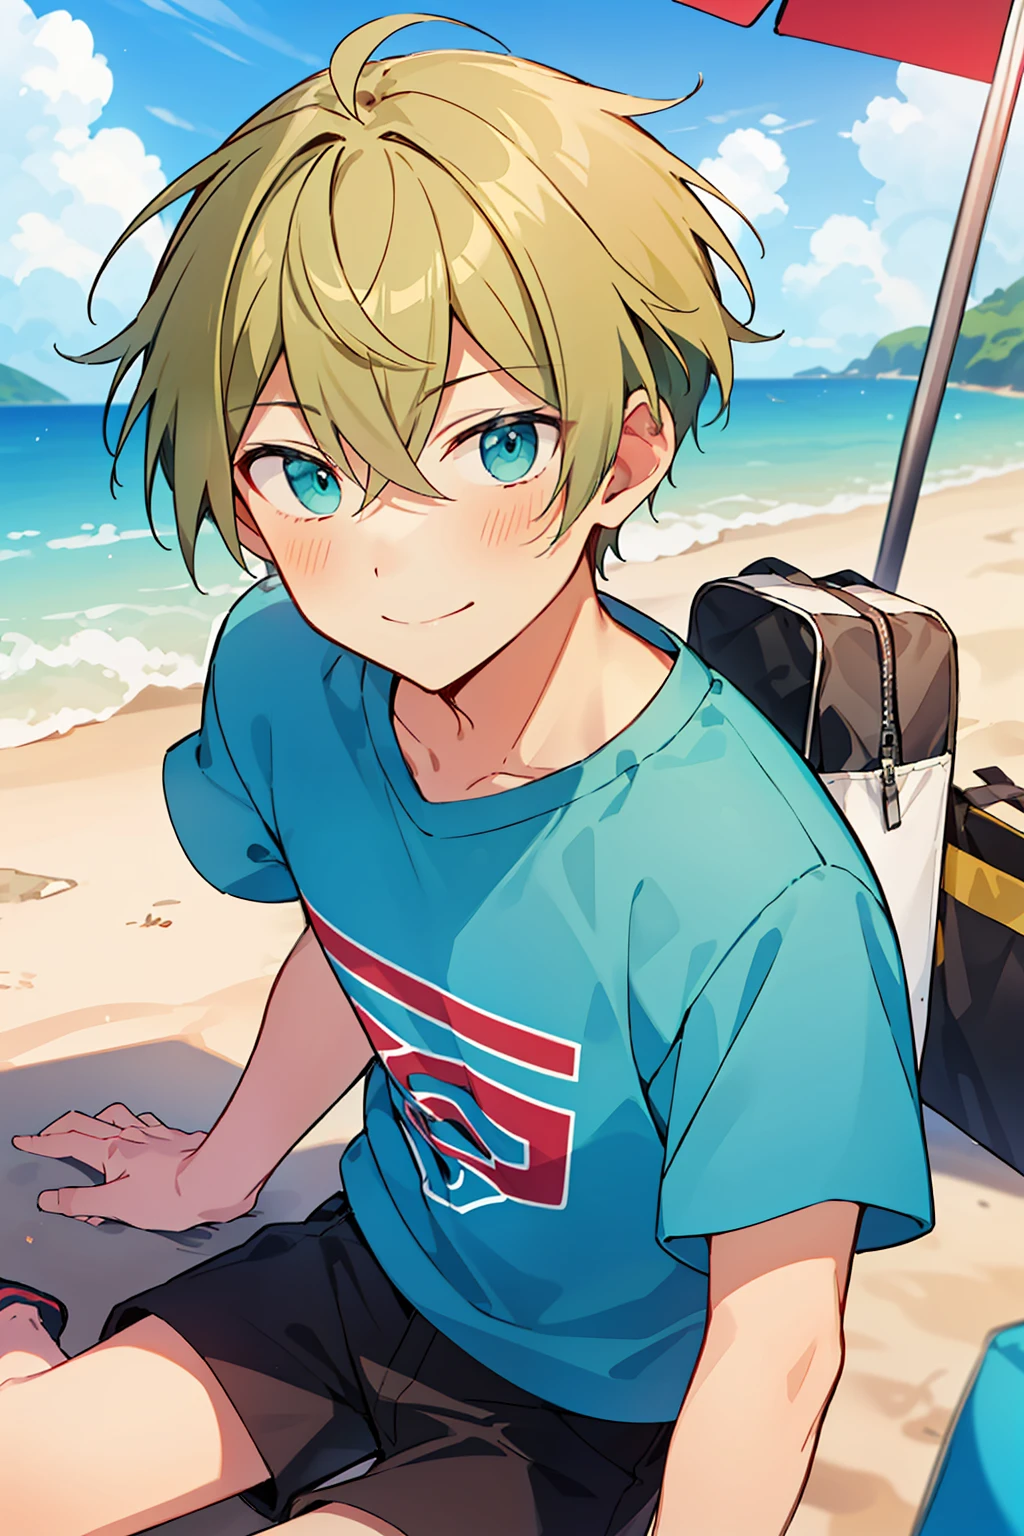 (高质量, 惊险),(富有表现力的眼睛, 完美脸蛋), 1个男孩, 男性, 独自的, 短的, 小男孩, 短的 greenish blonde hair, 蓝绿色的眼睛, 微笑, T恤, 在沙滩上, 半身